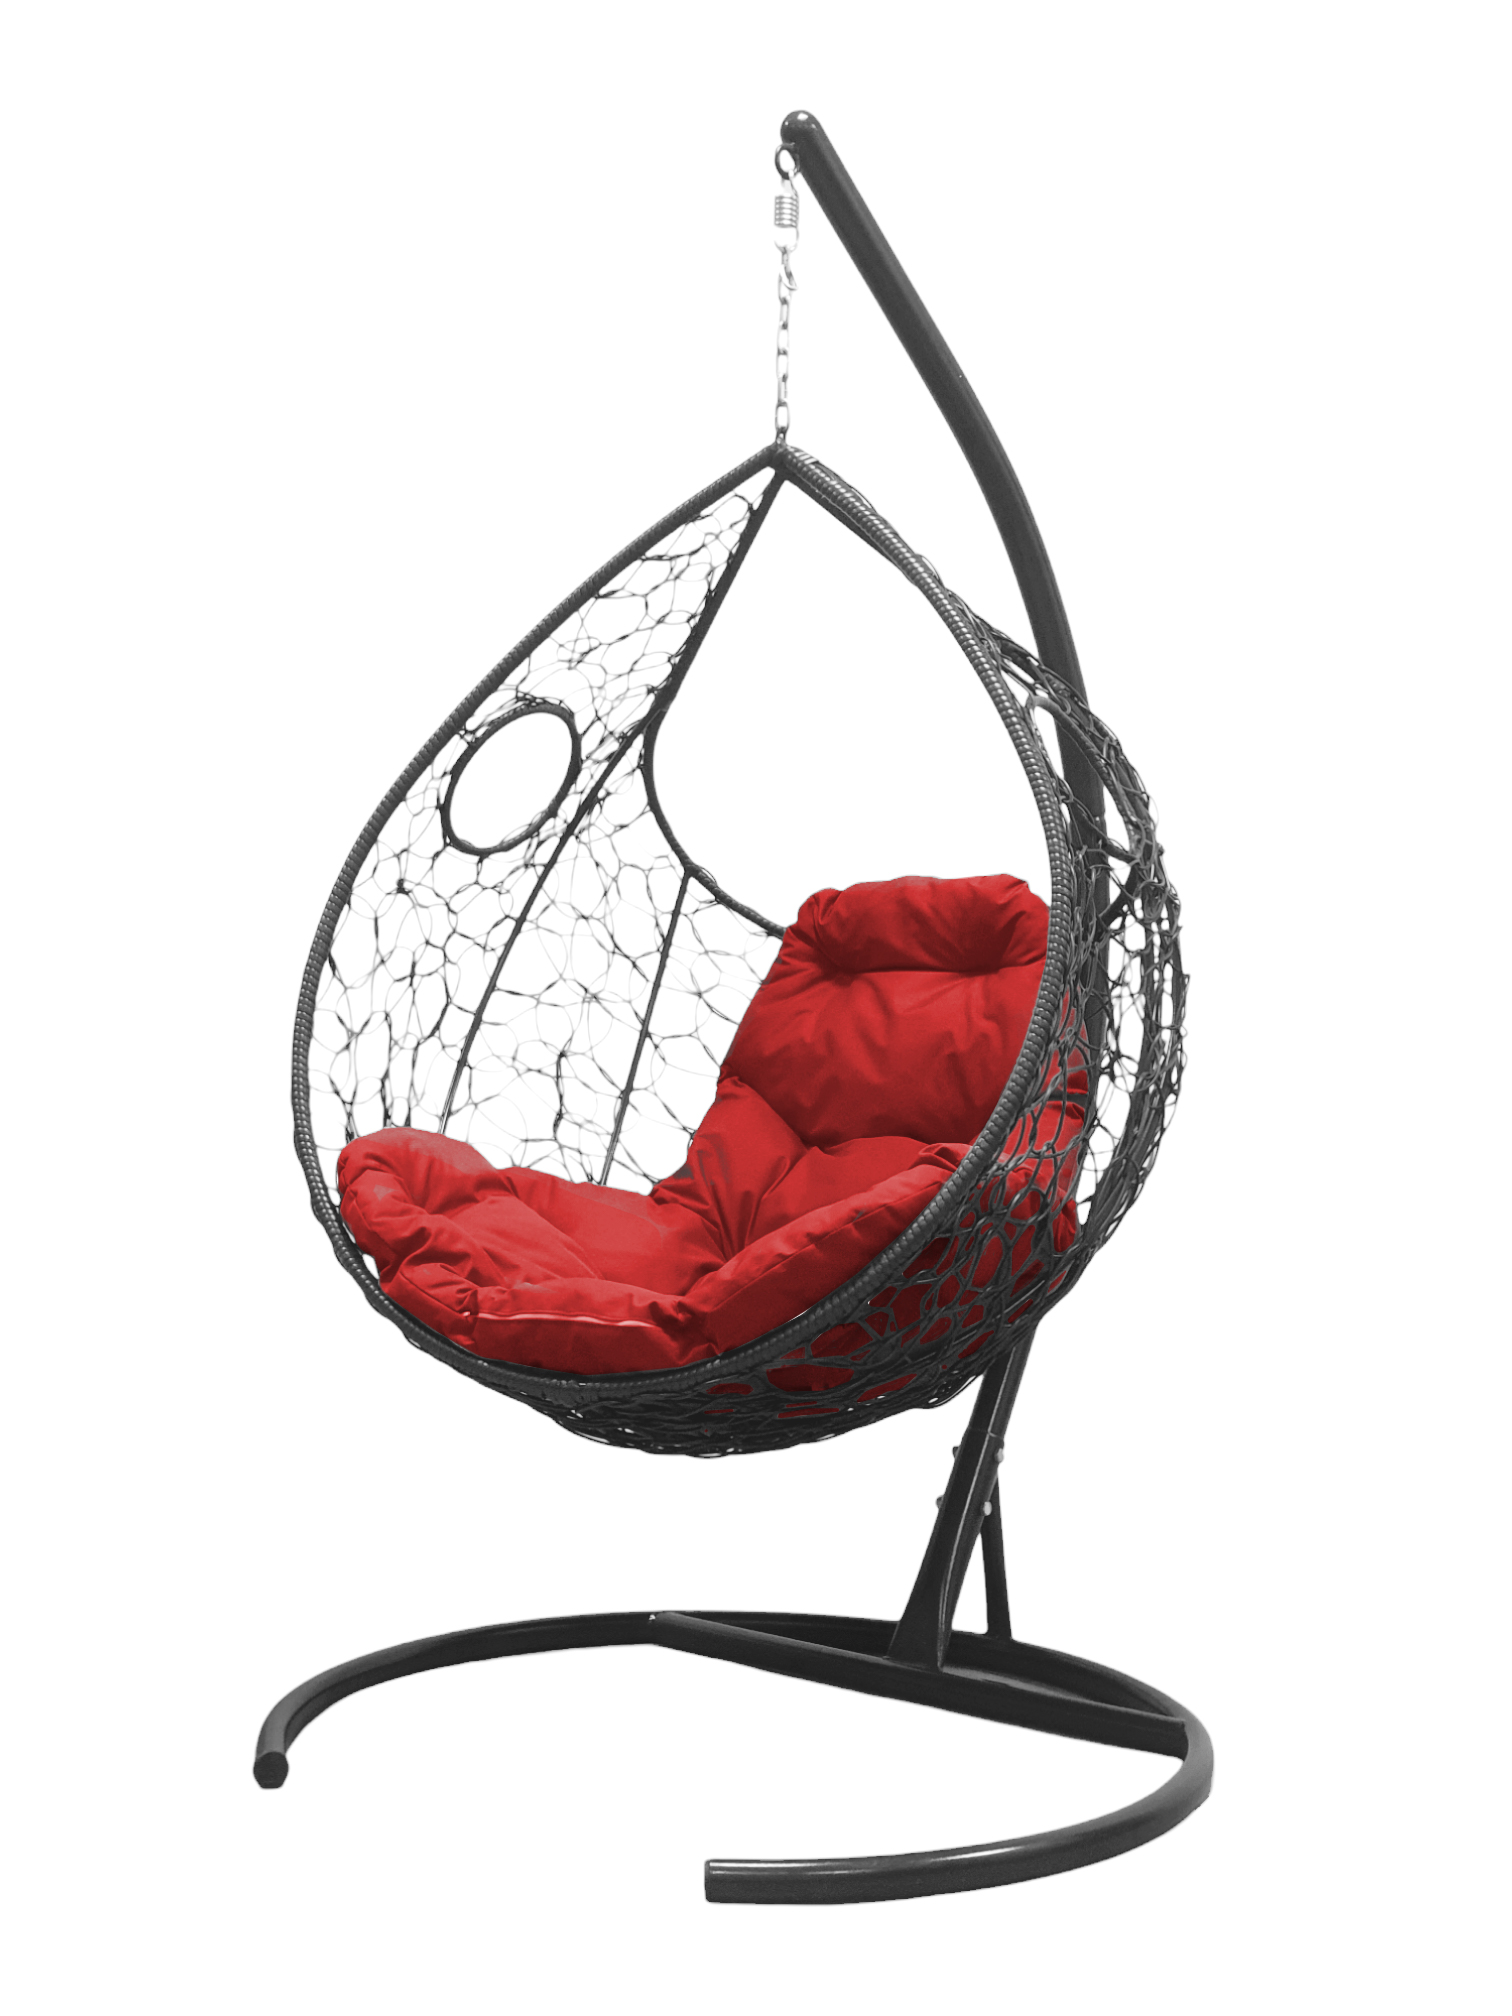 фото Подвесное кресло серый m-group долька ротанг 11150306 красная подушка